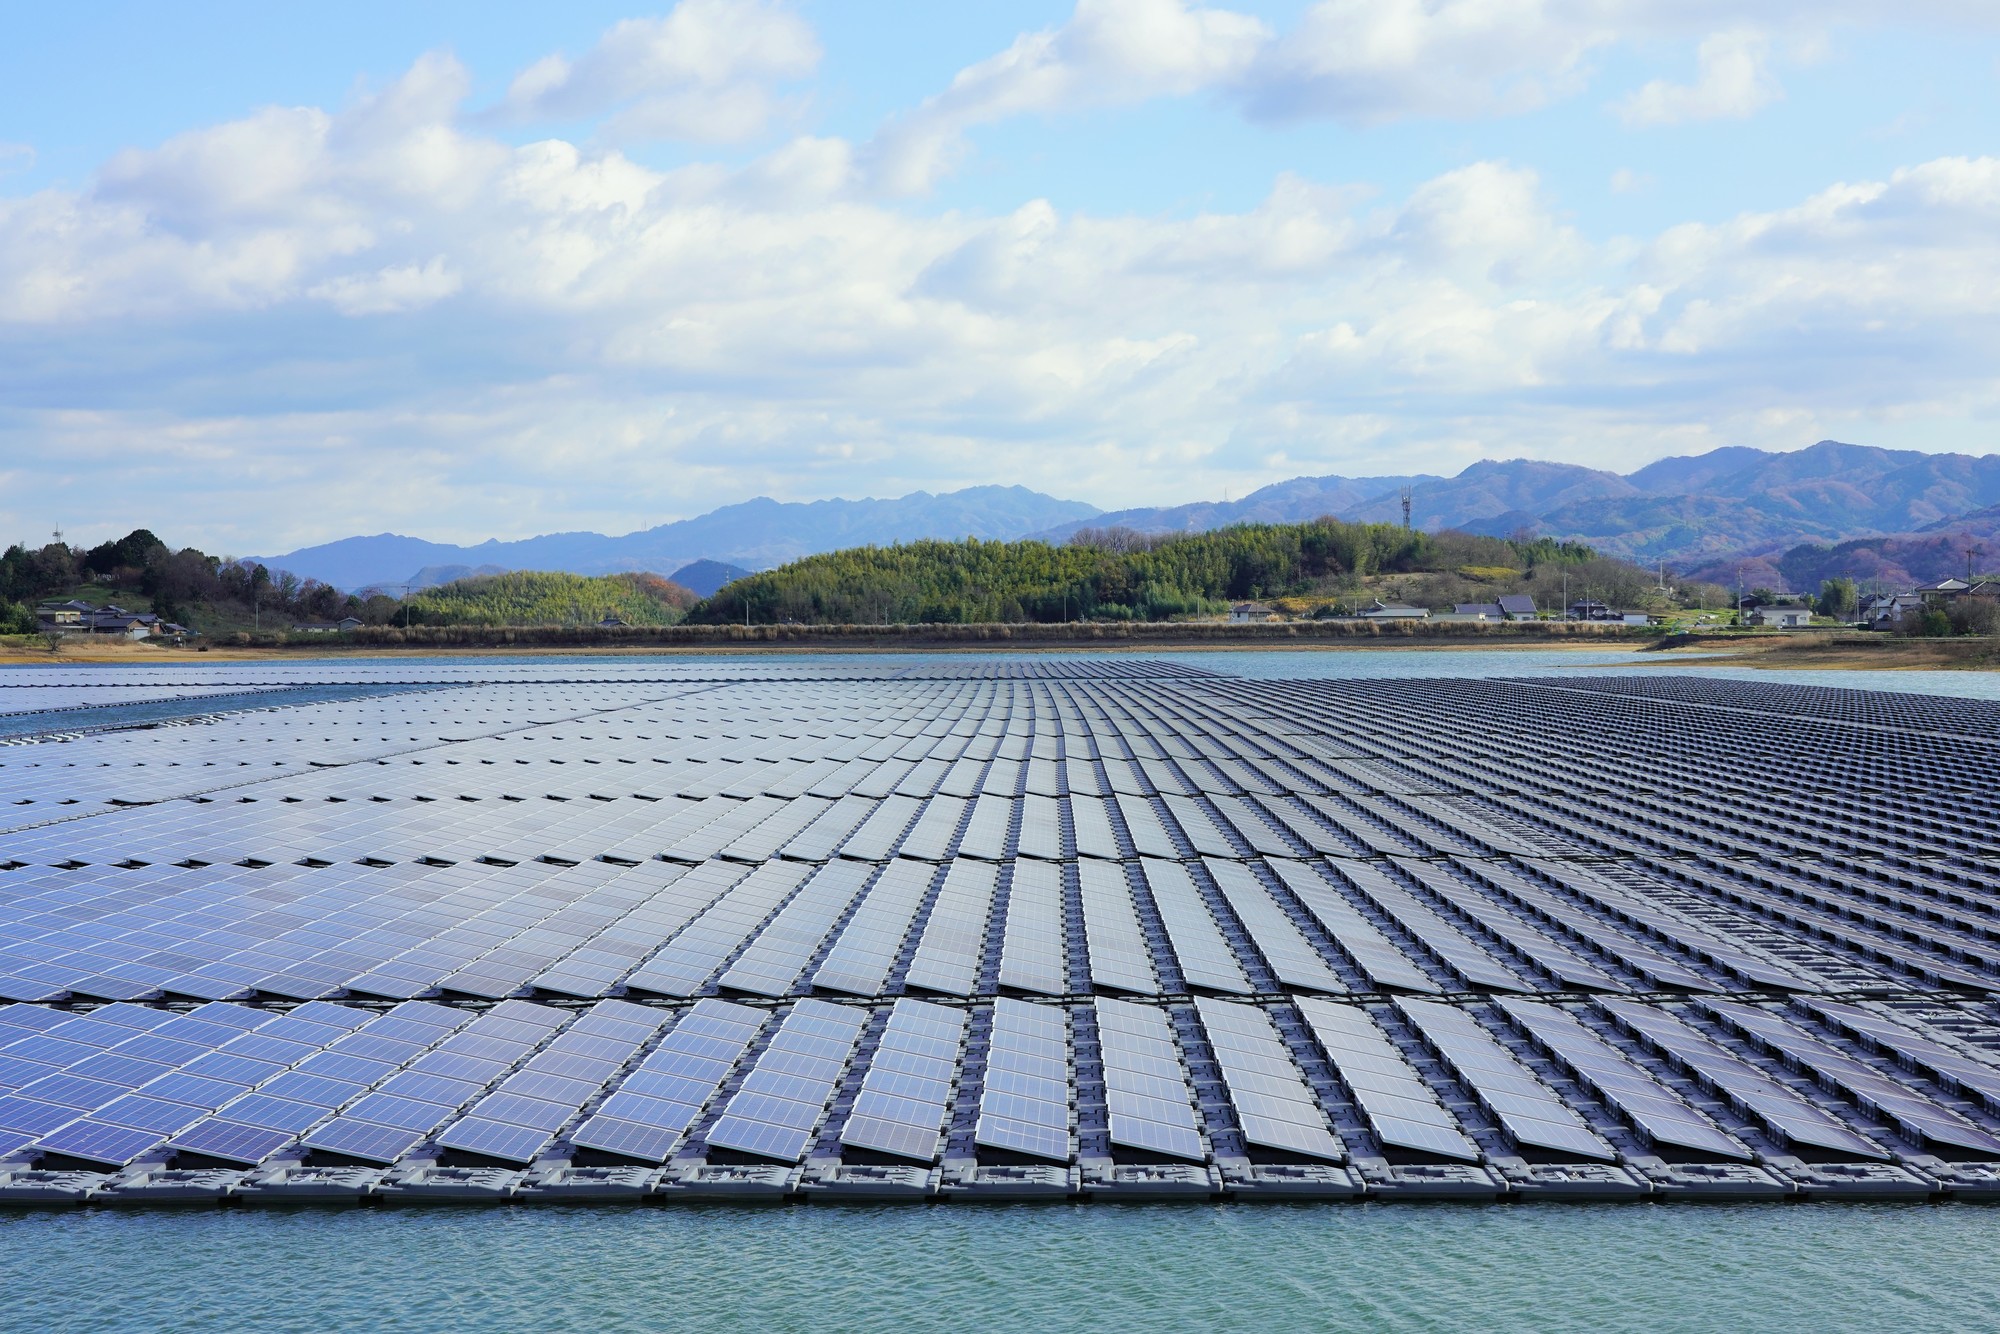 ため池に水上太陽光発電 香川県で建設ラッシュがなぜ続く エネルギー自由化コラム 電力 ガス比較サイト エネチェンジ